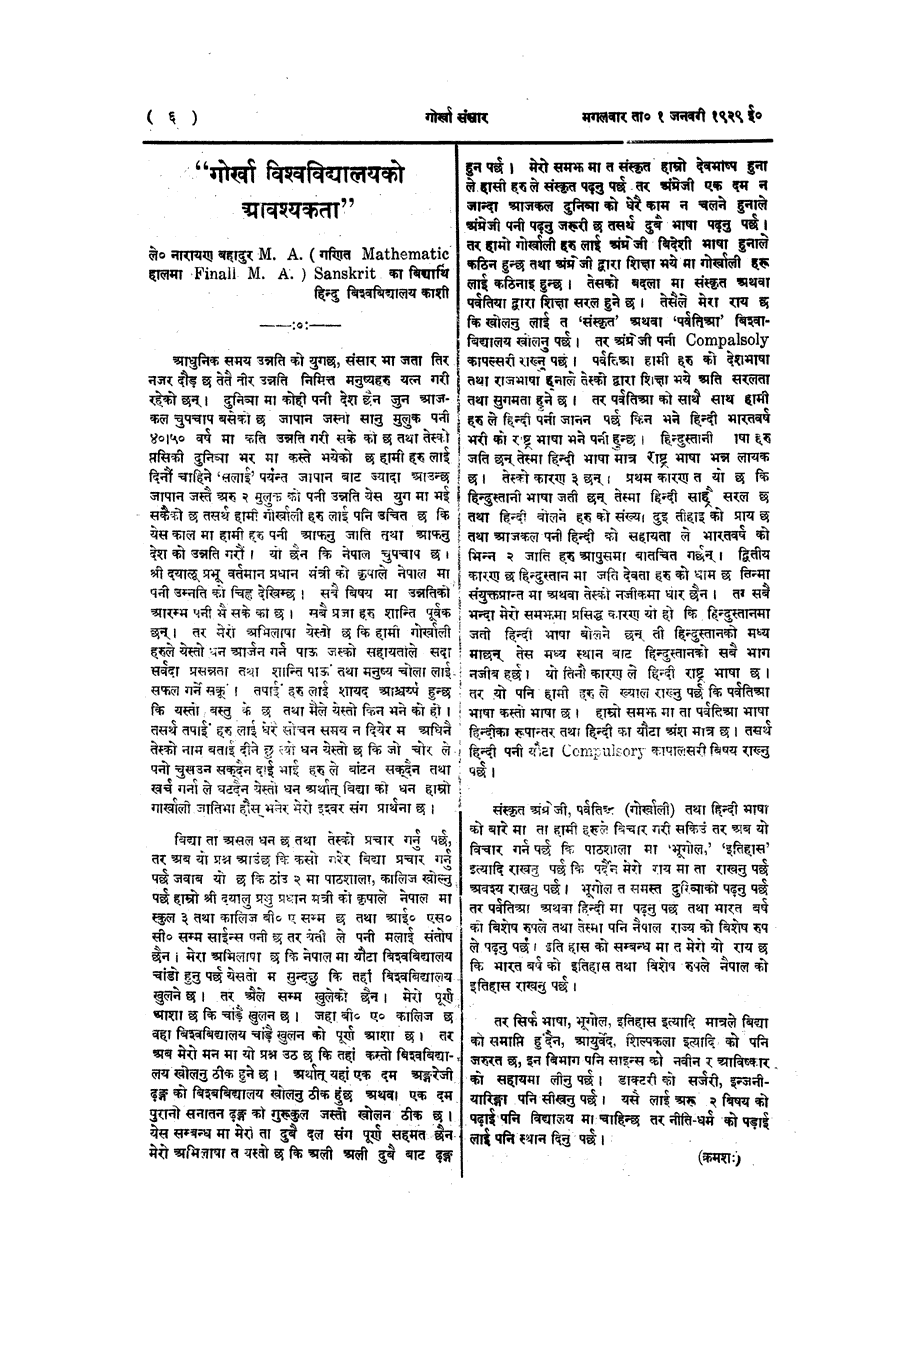 Gorkha Sansar, 1 Jan 1929, page 6